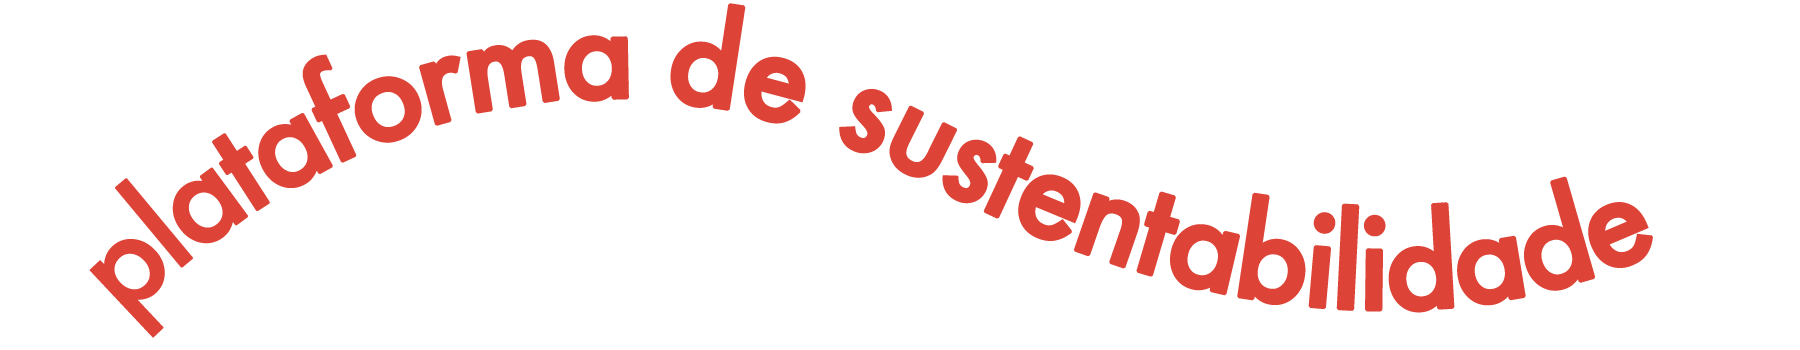 Banner plataforma de sustentabilidade